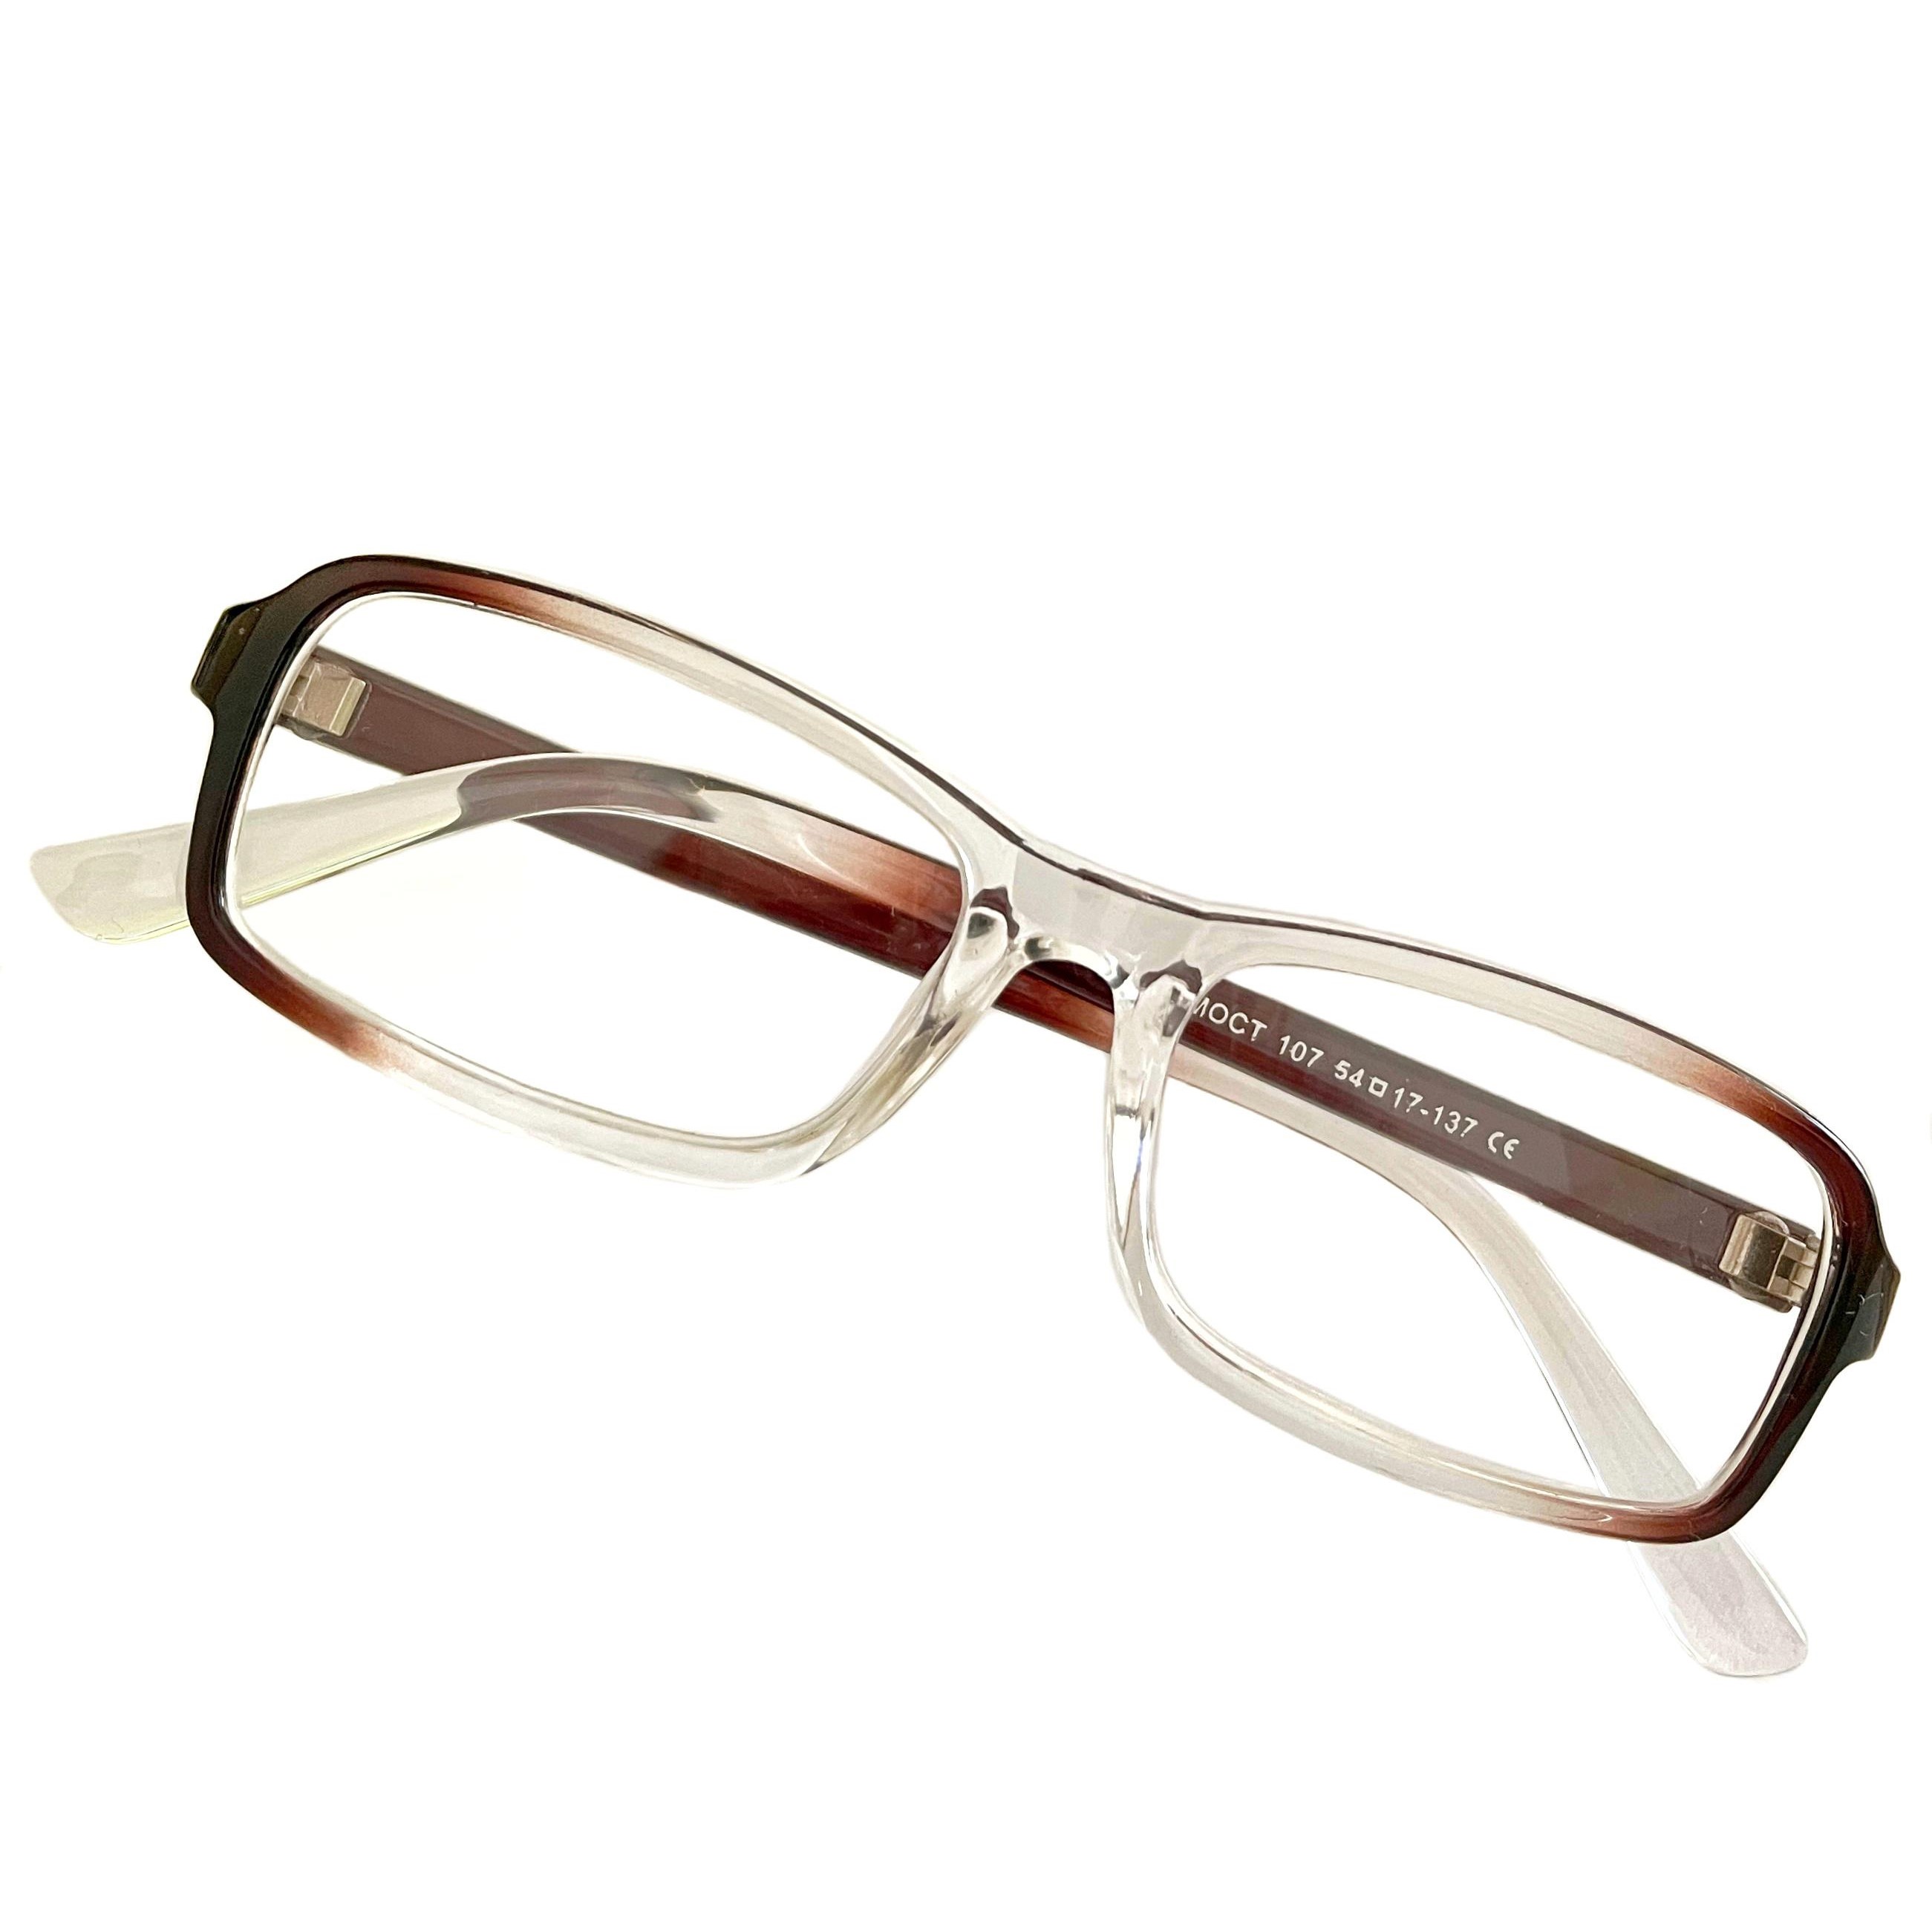 Купить Очки MOCT для зрения, с диоптриями +2, 0 корригирующие для чтения